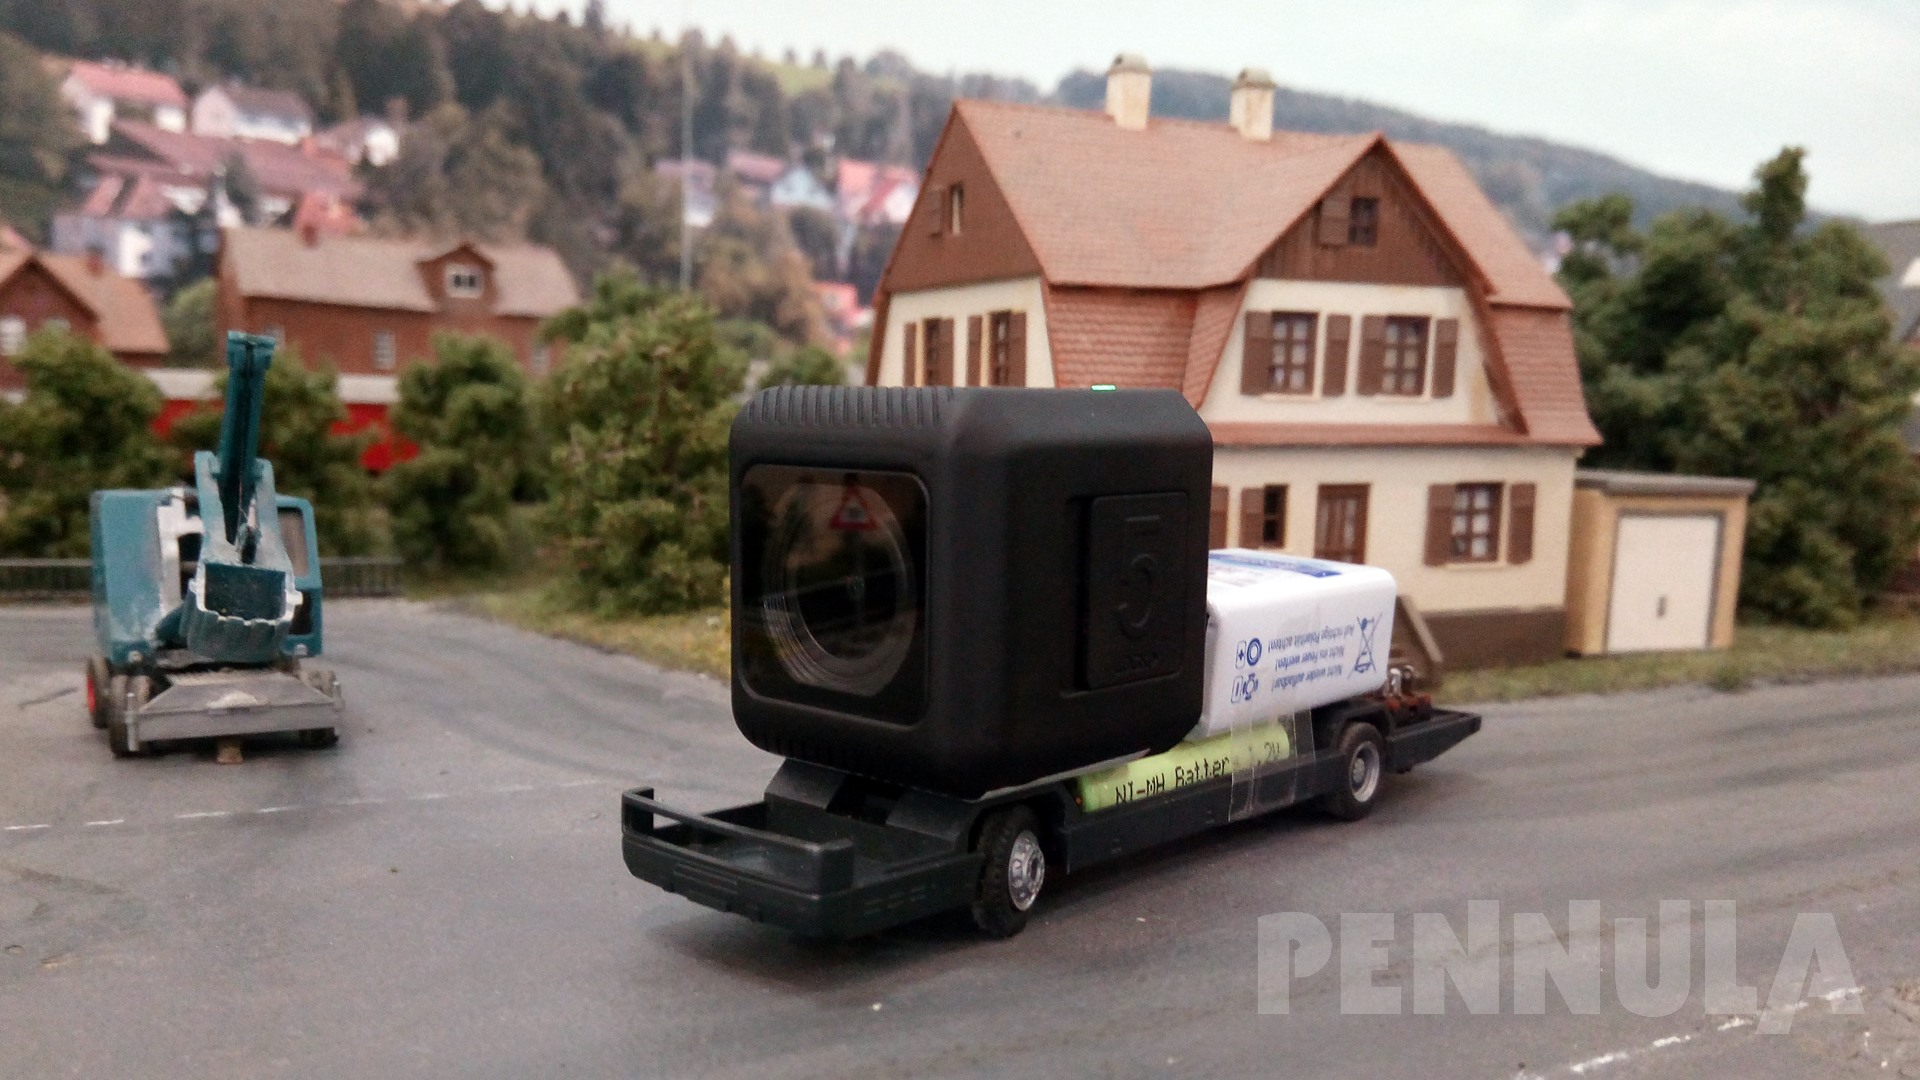 Weltpremiere bei Pennula: Car System Kamera Führerstandsmitfahrt mit der RunCam 5